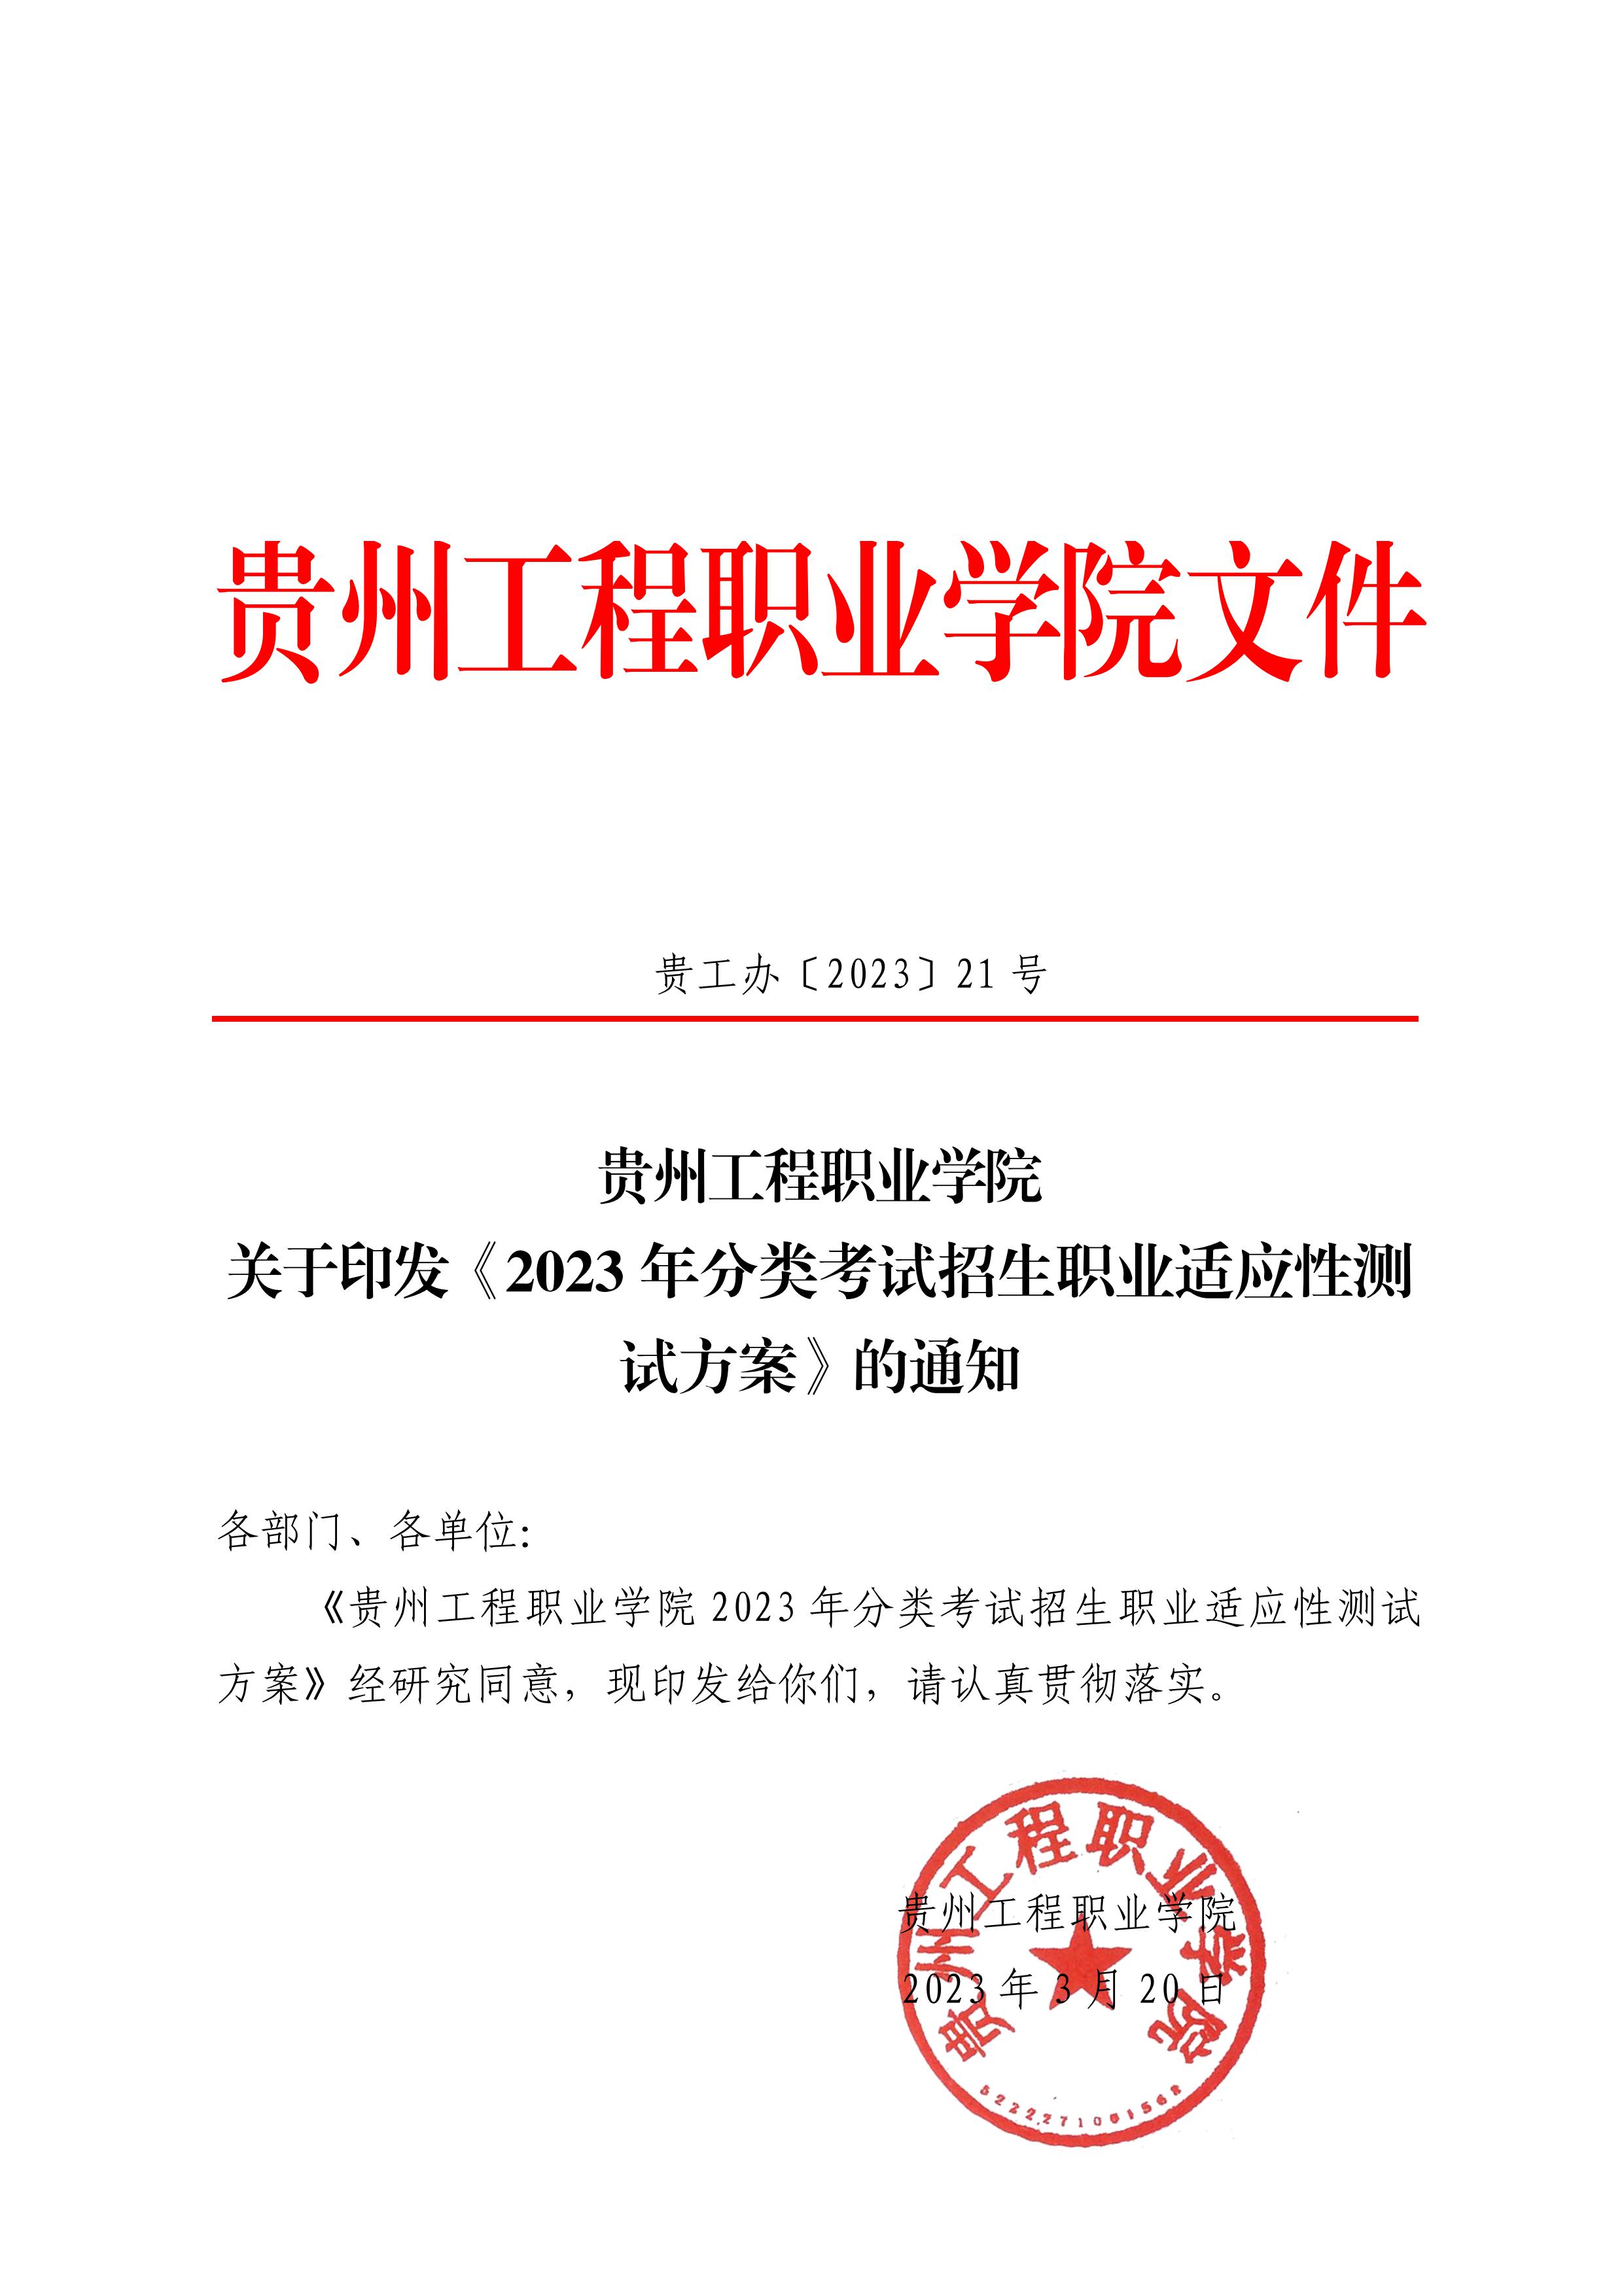 九州电竞(中国)九州有限公司 2023年分类考试招生职业适应性测试方案(图1)